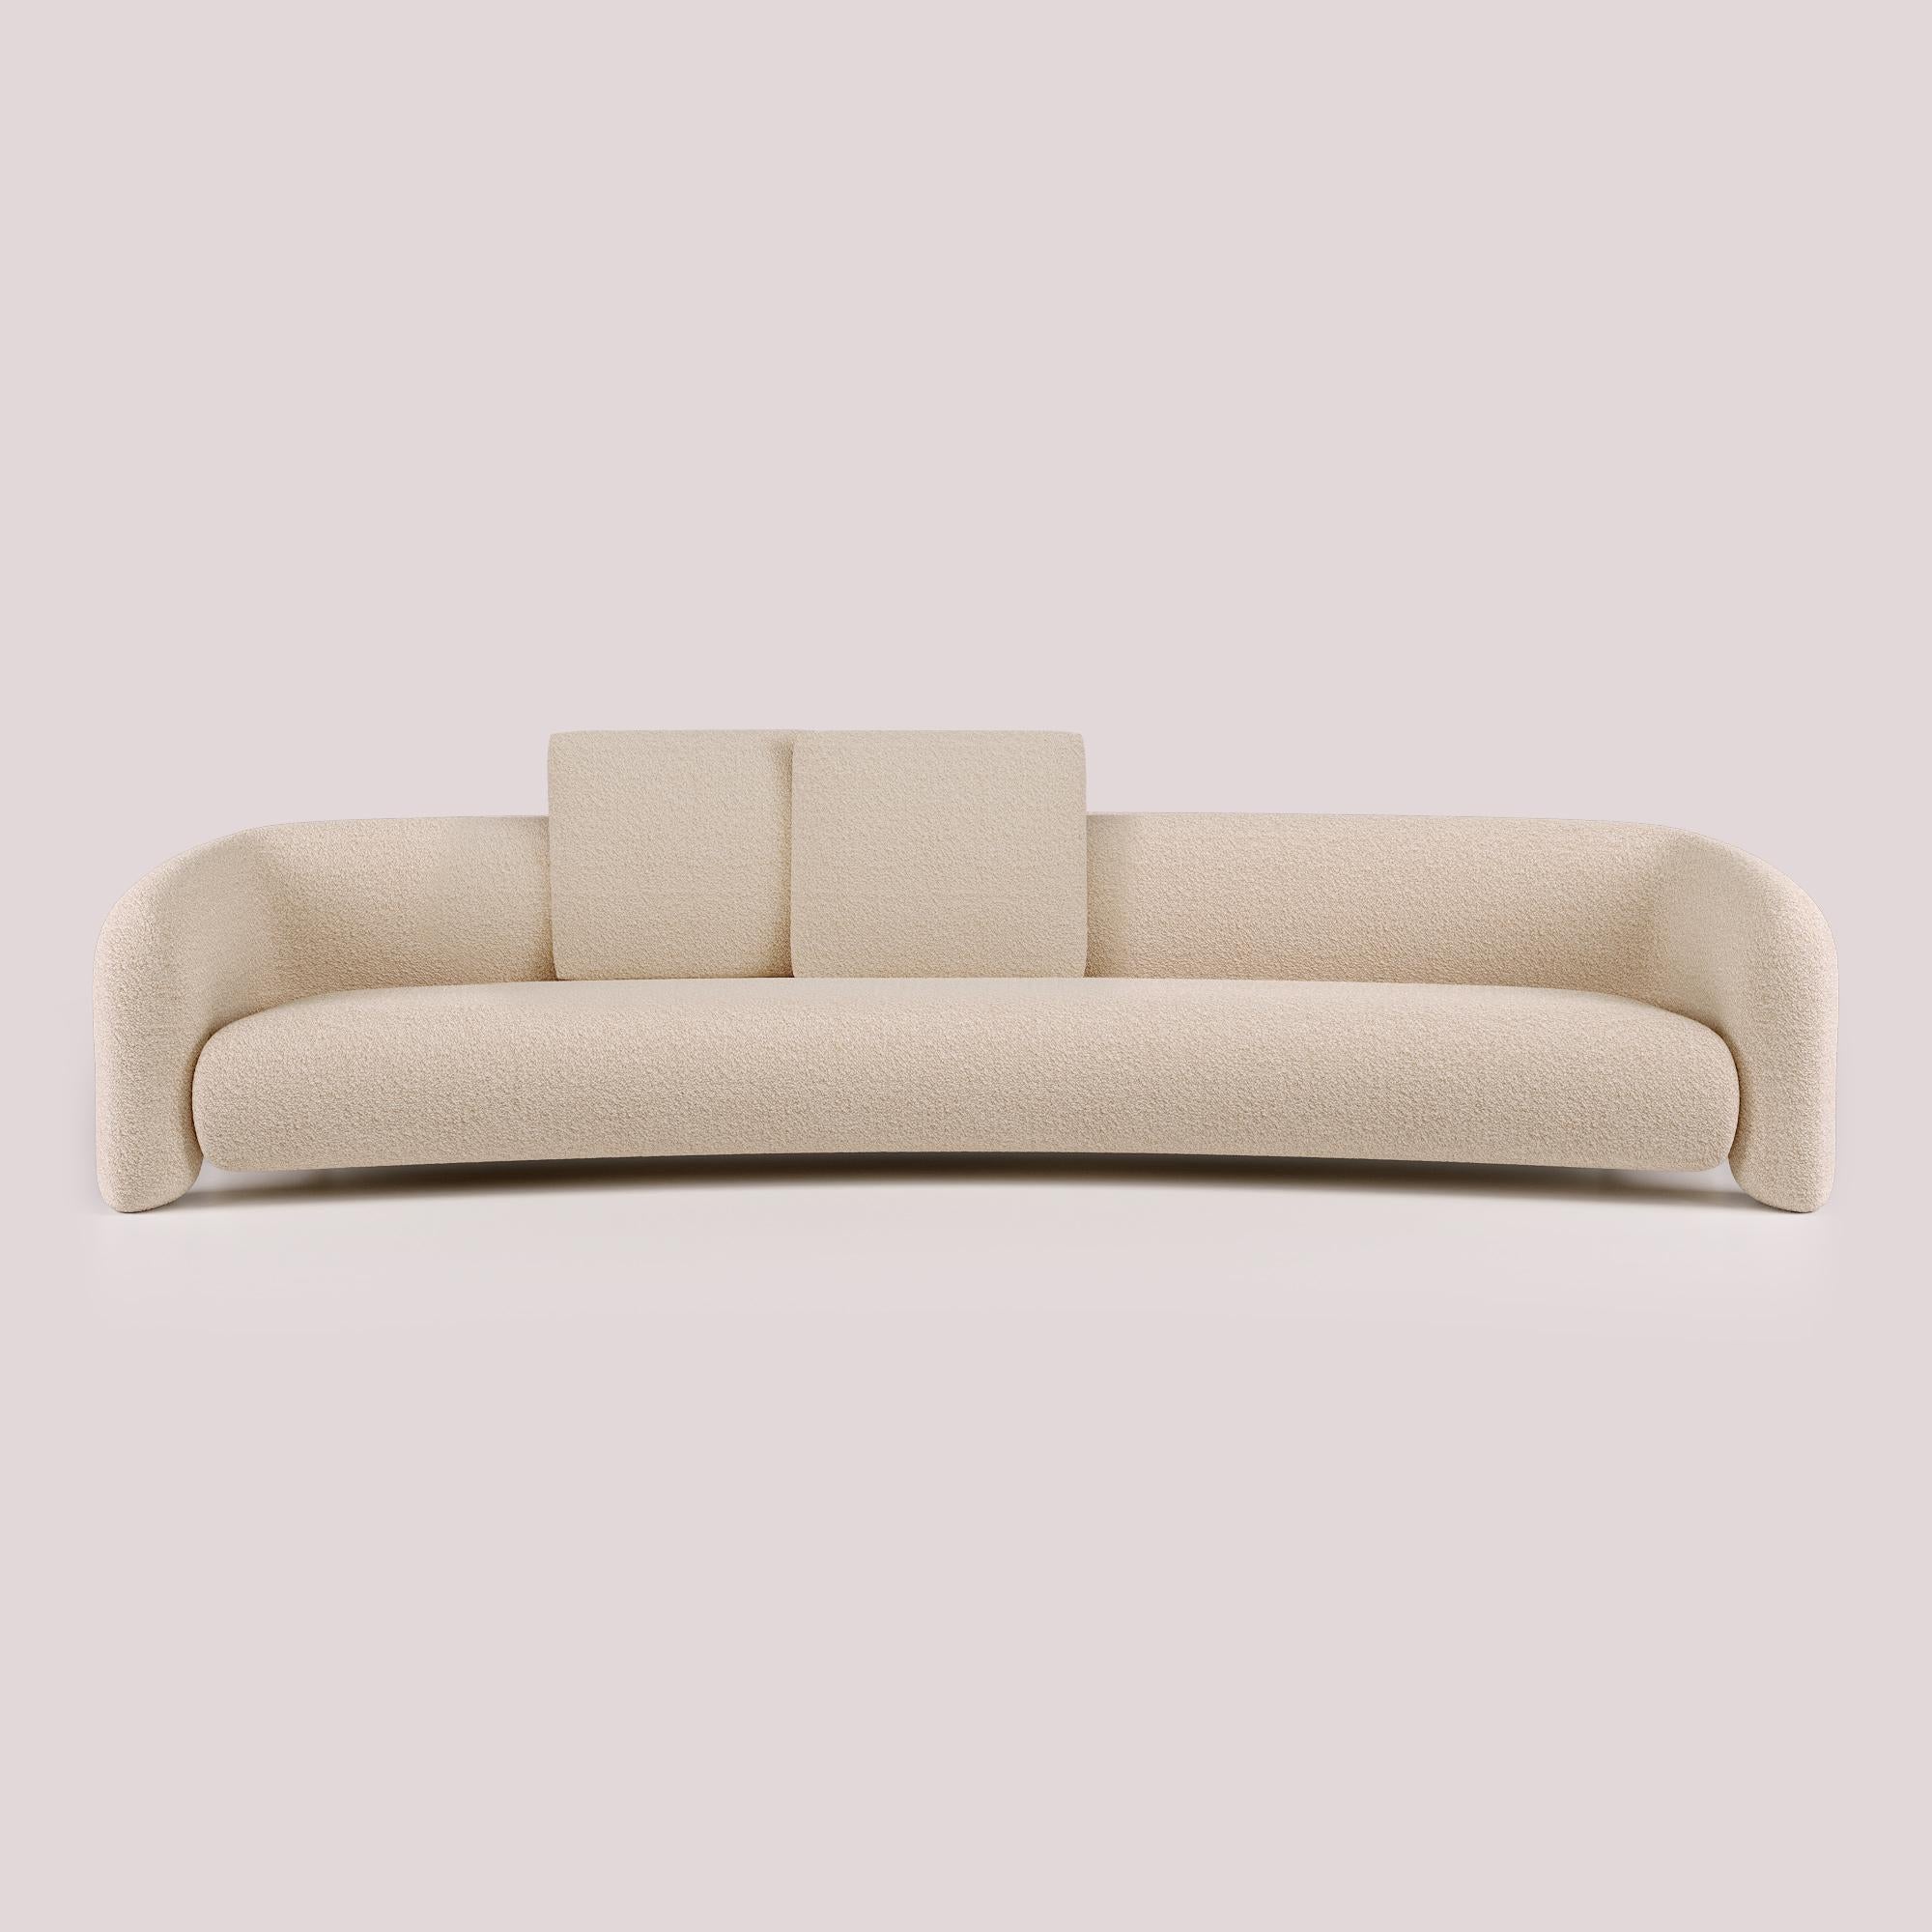 Diese Version des Bold Sofa Curved eröffnet mit ihrem modernen Design neue Dimensionen des Komforts und bietet mehr Platz für ultimative Entspannung. Die fließenden Linien und organischen Kurven, kombiniert mit den offenen Armen, verstärken das